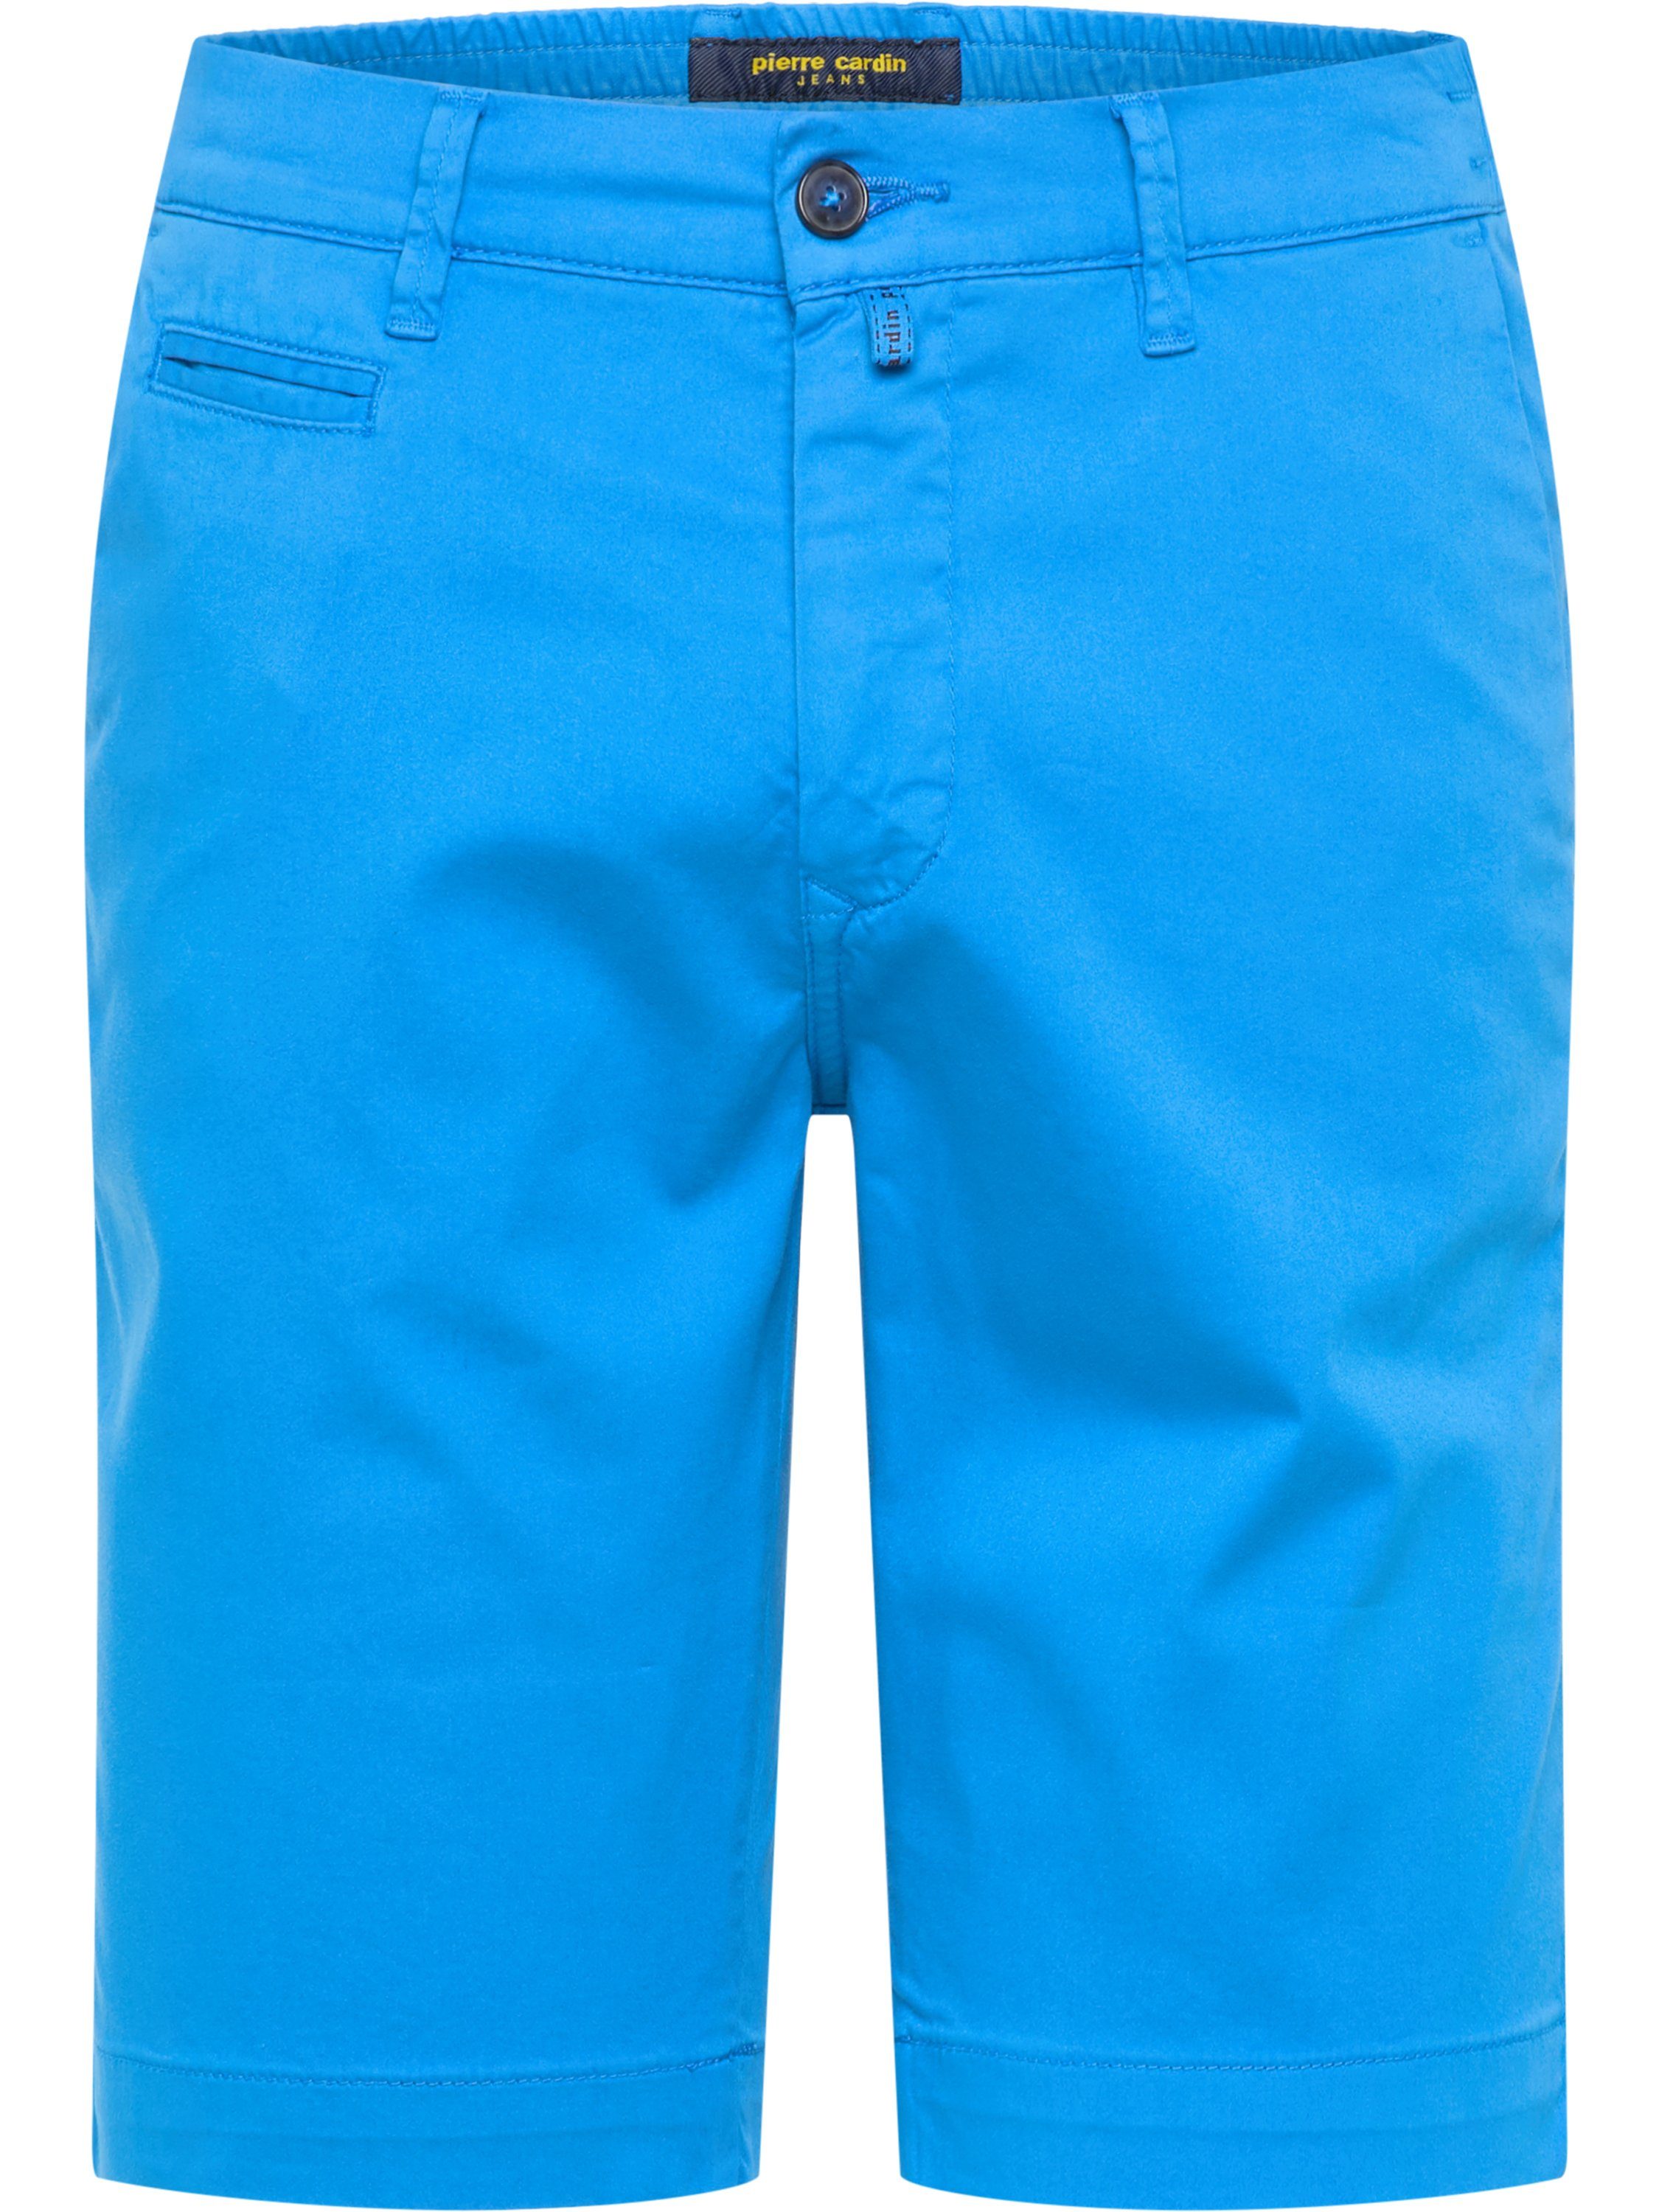 Pierre Cardin 5-Pocket-Jeans PIERRE CARDIN LYON AIRTOUCH BERMUDA bright blue 3477 2080.64 | Jeans